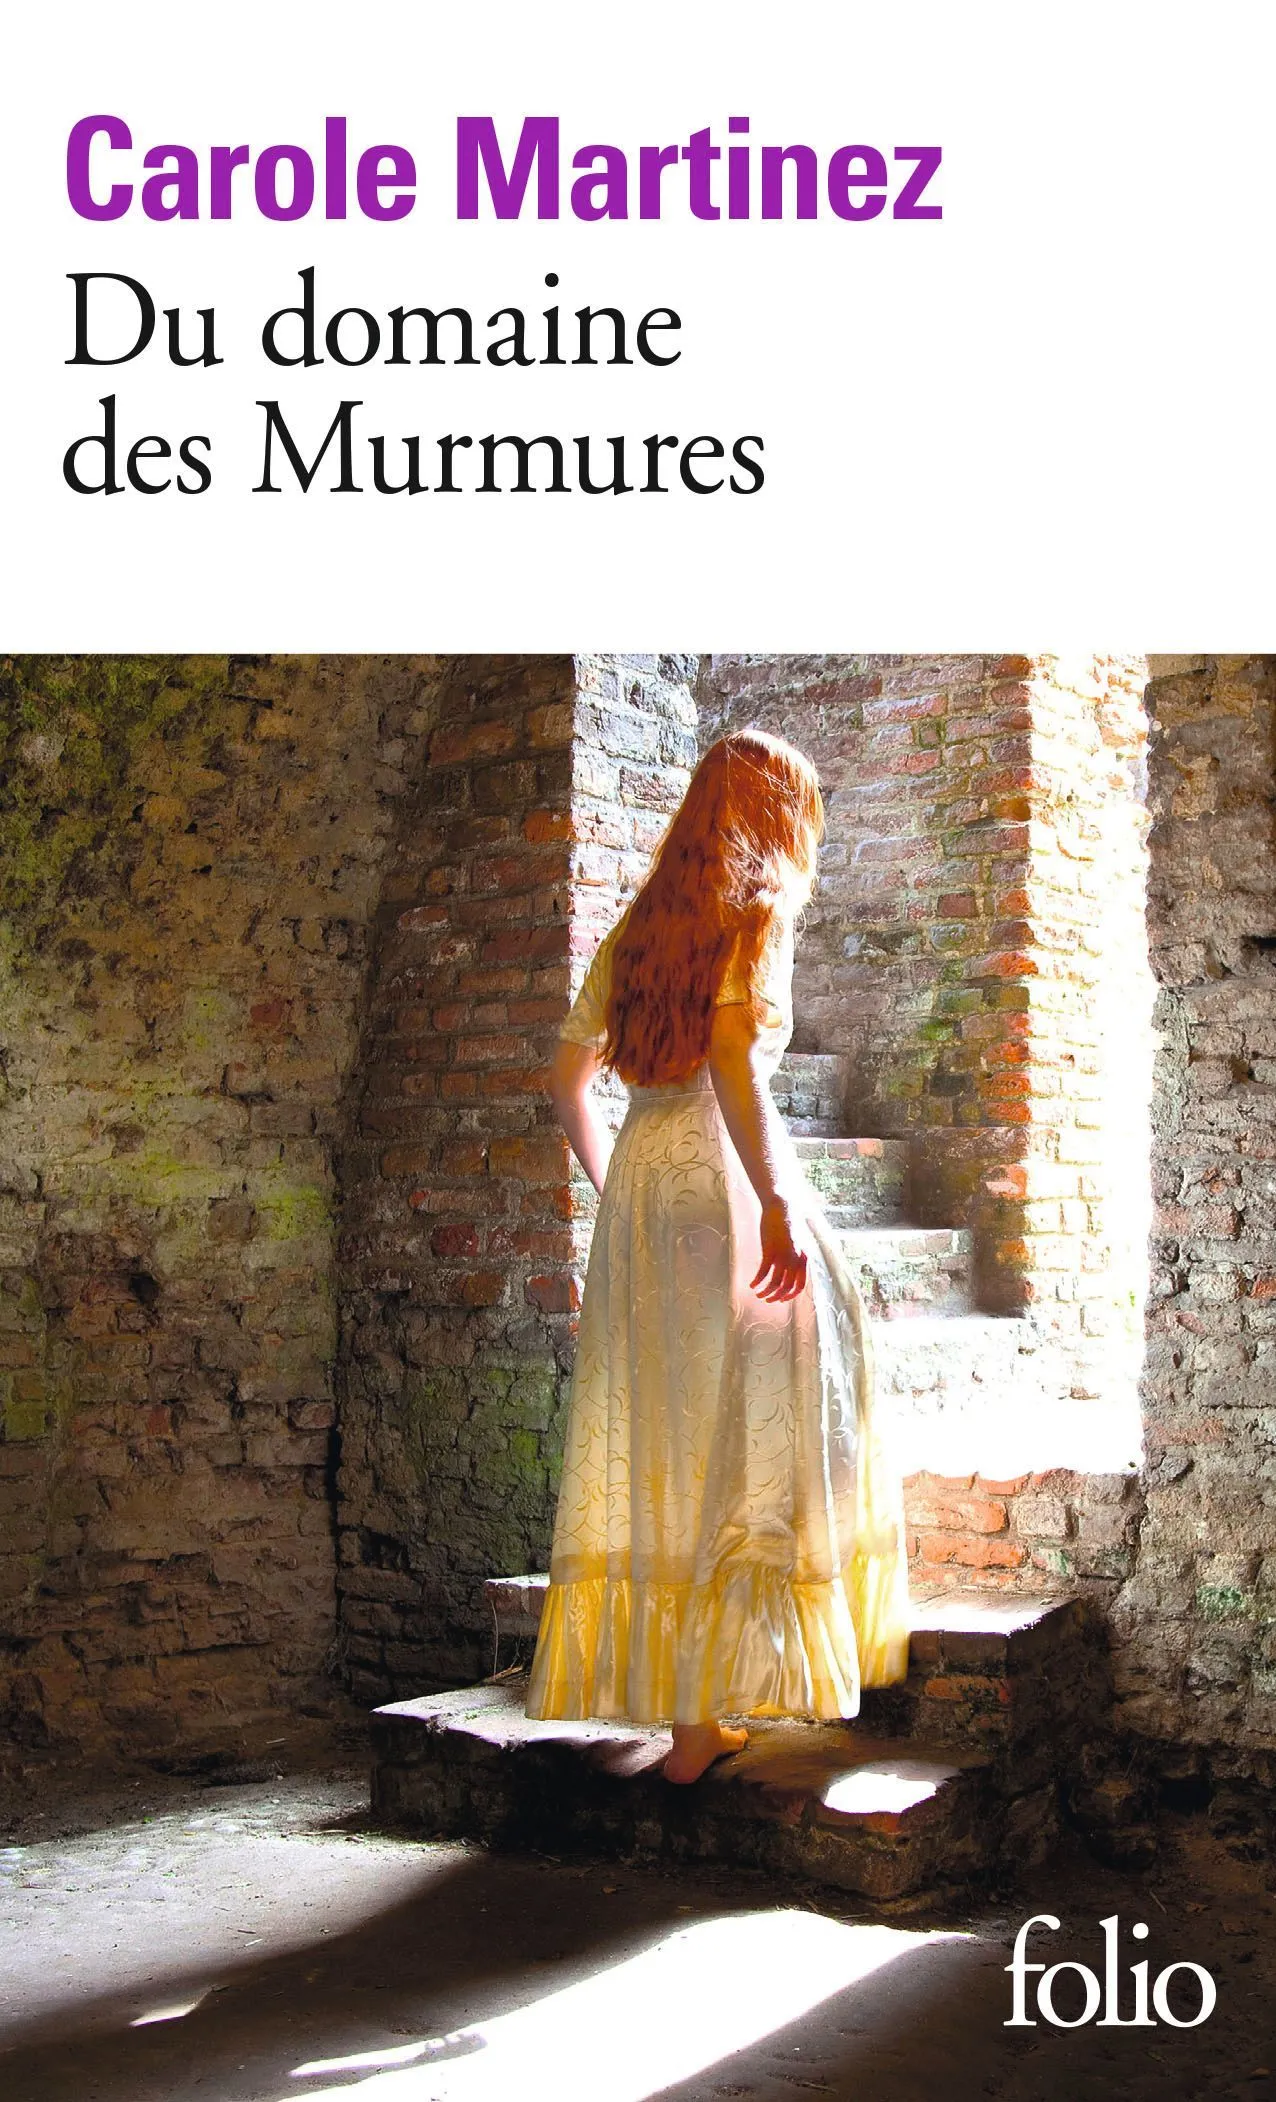 Carole Martinez, Du domaine des Murmures, 2011, Éditions Gallimard, coll. Folio.